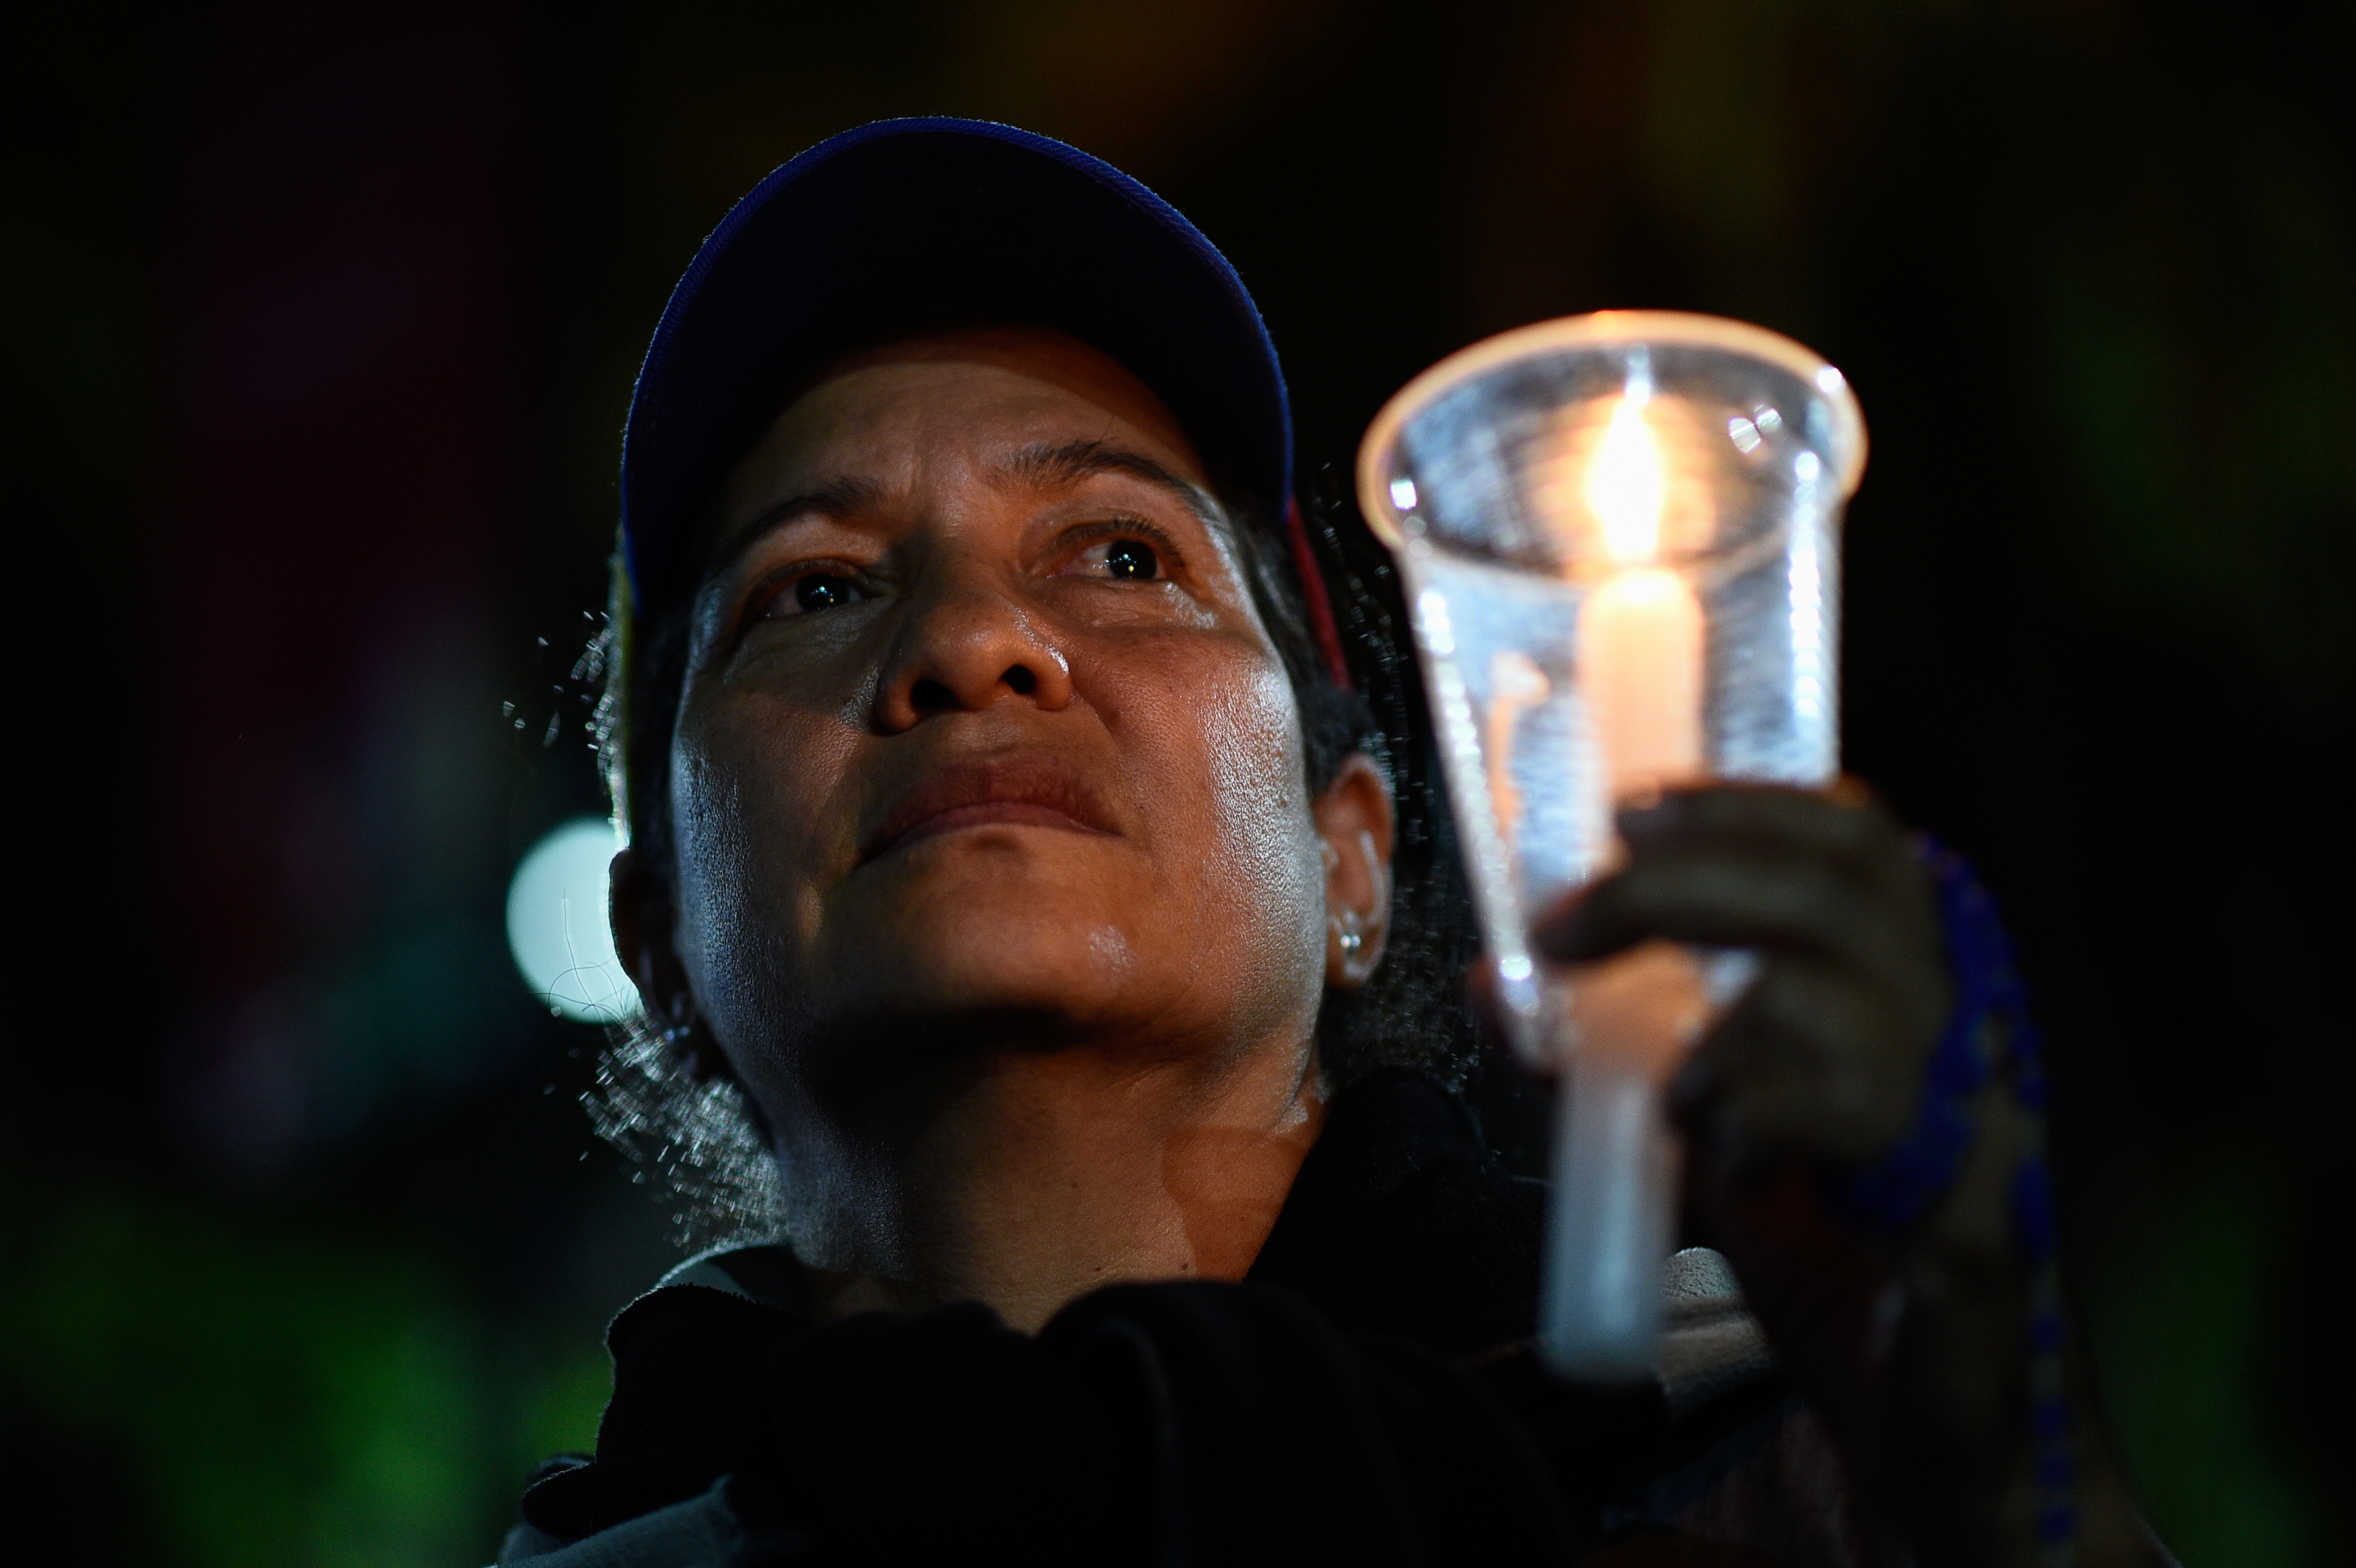 Venezolanos recuerdan durante vigilia a jóvenes asesinados en protestas contra Maduro (Fotos)